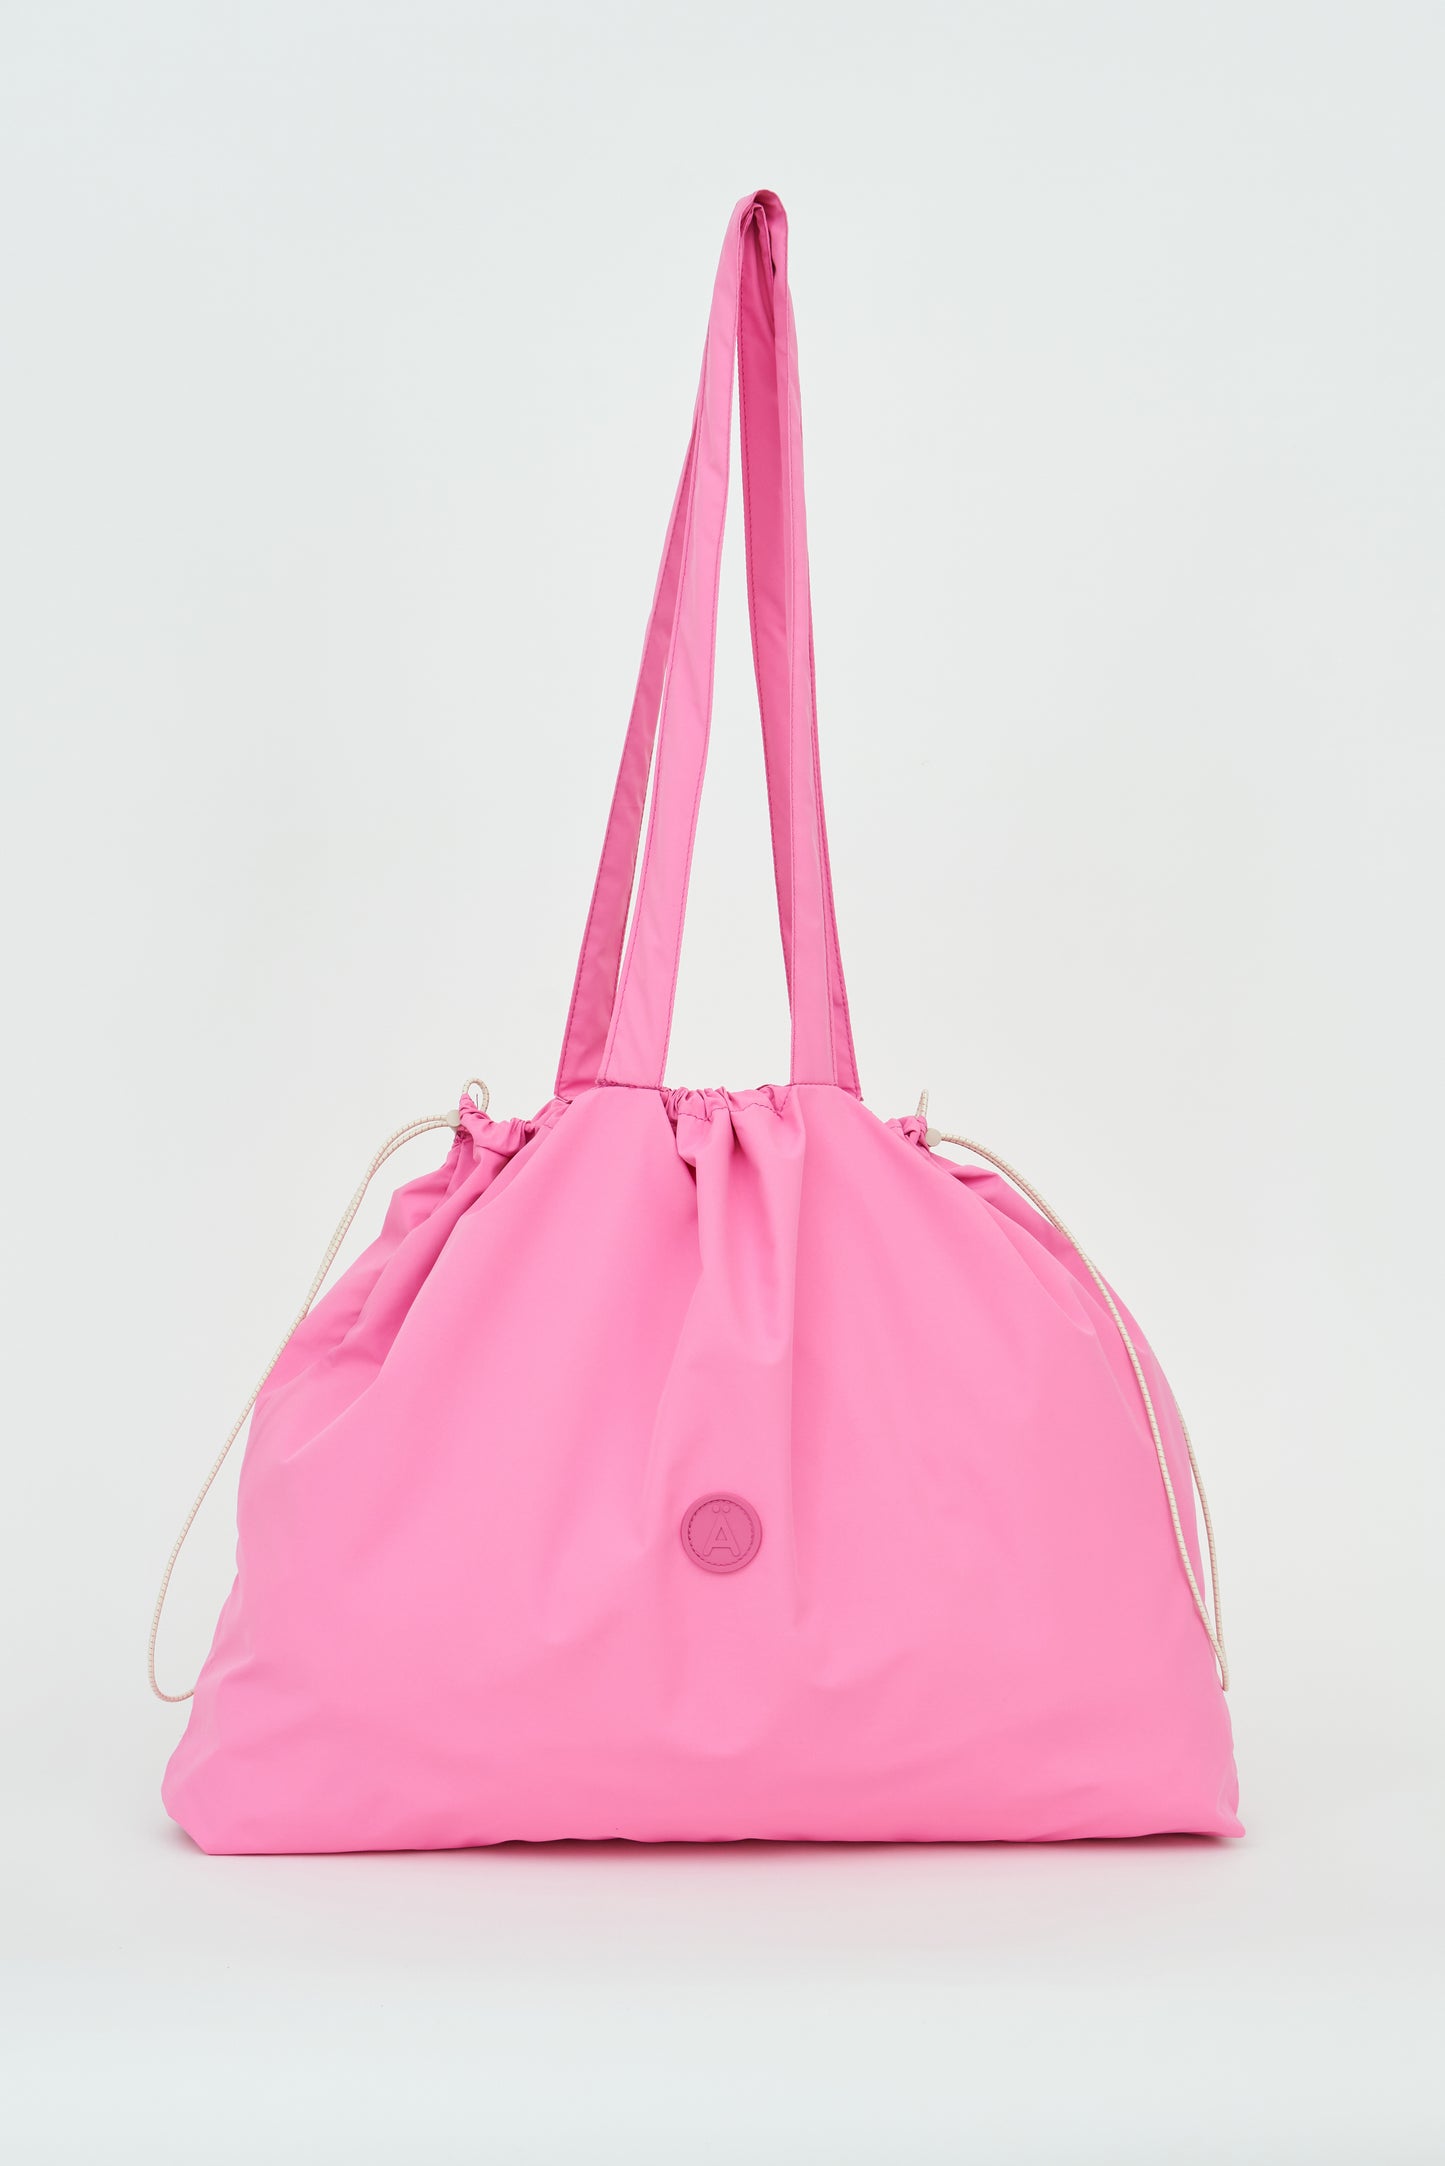 Imvula Waterproof Bag Pink